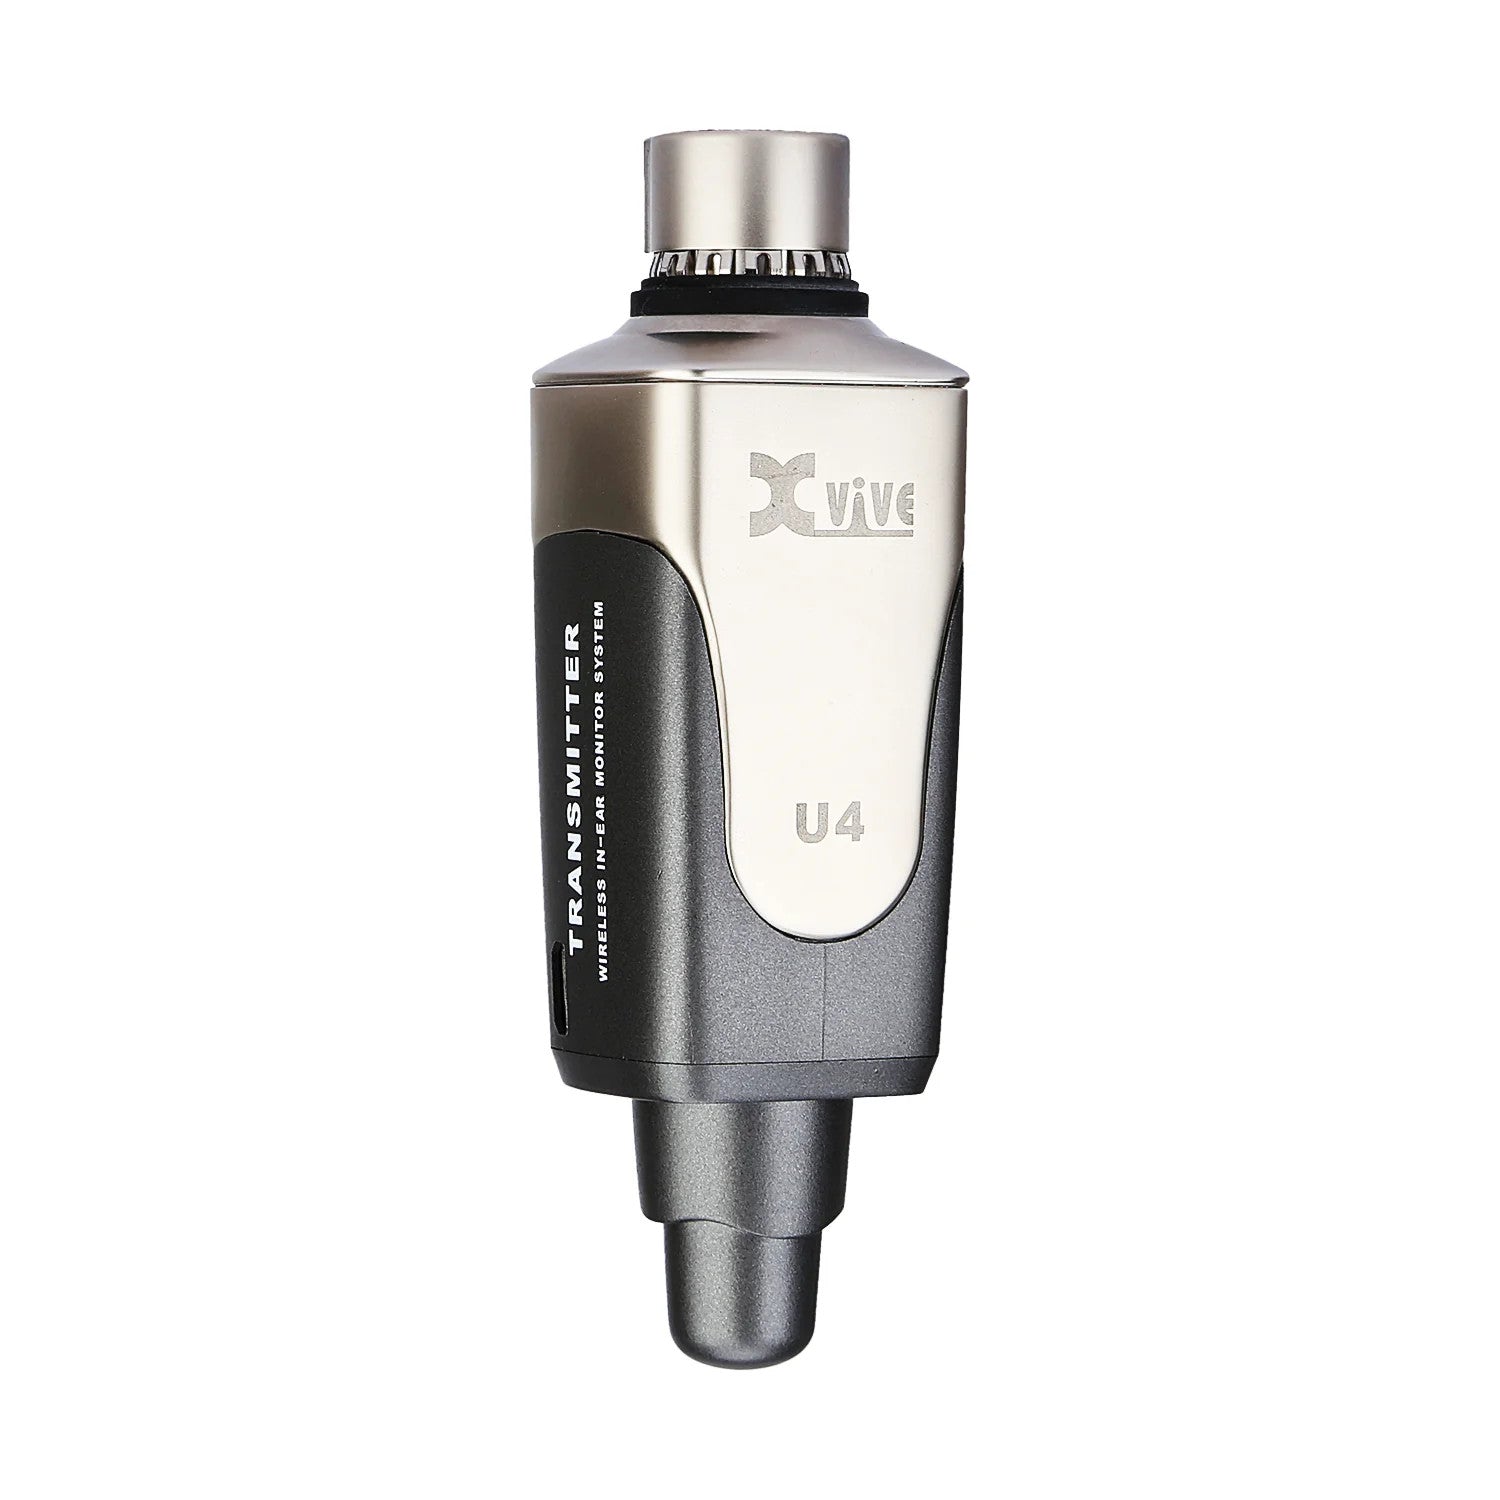 Xvive 2.4GHz Wireless In-Ear Monitor System Transmitter - maplin.co.uk